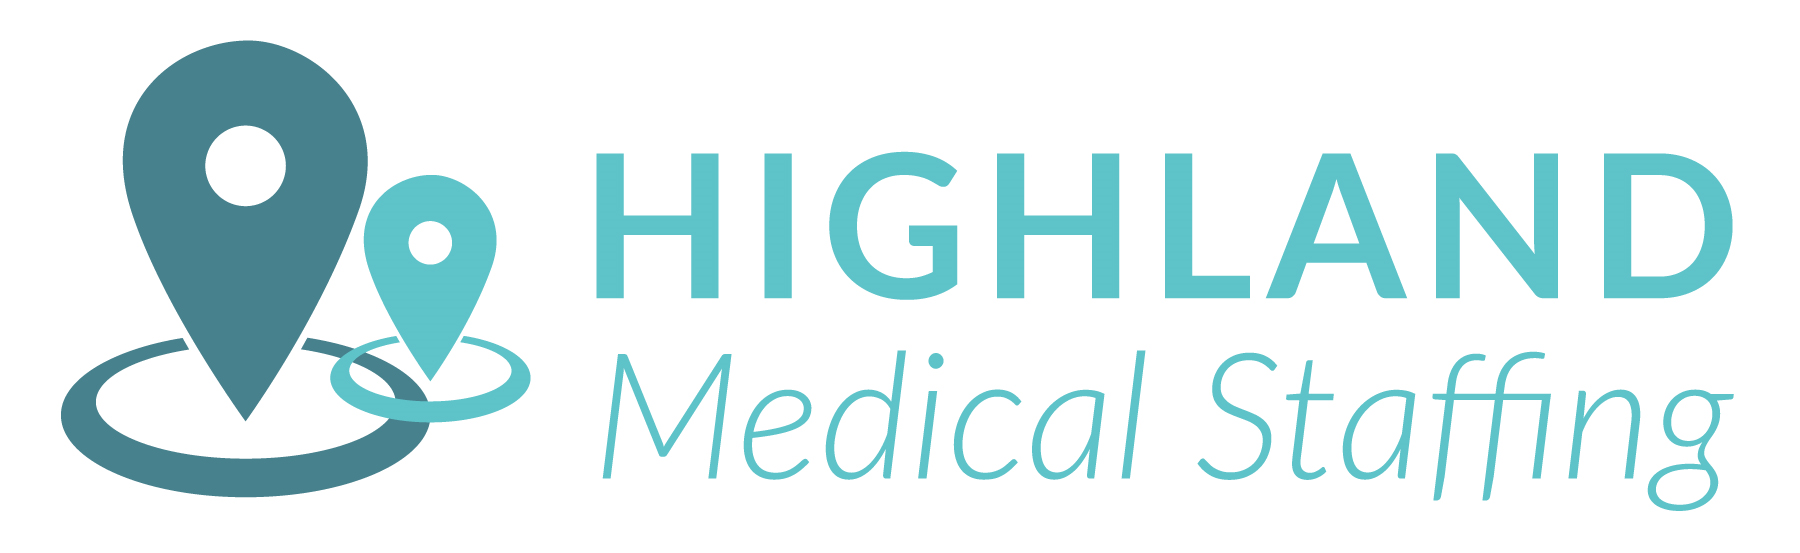 Highland Medical Staffing logo